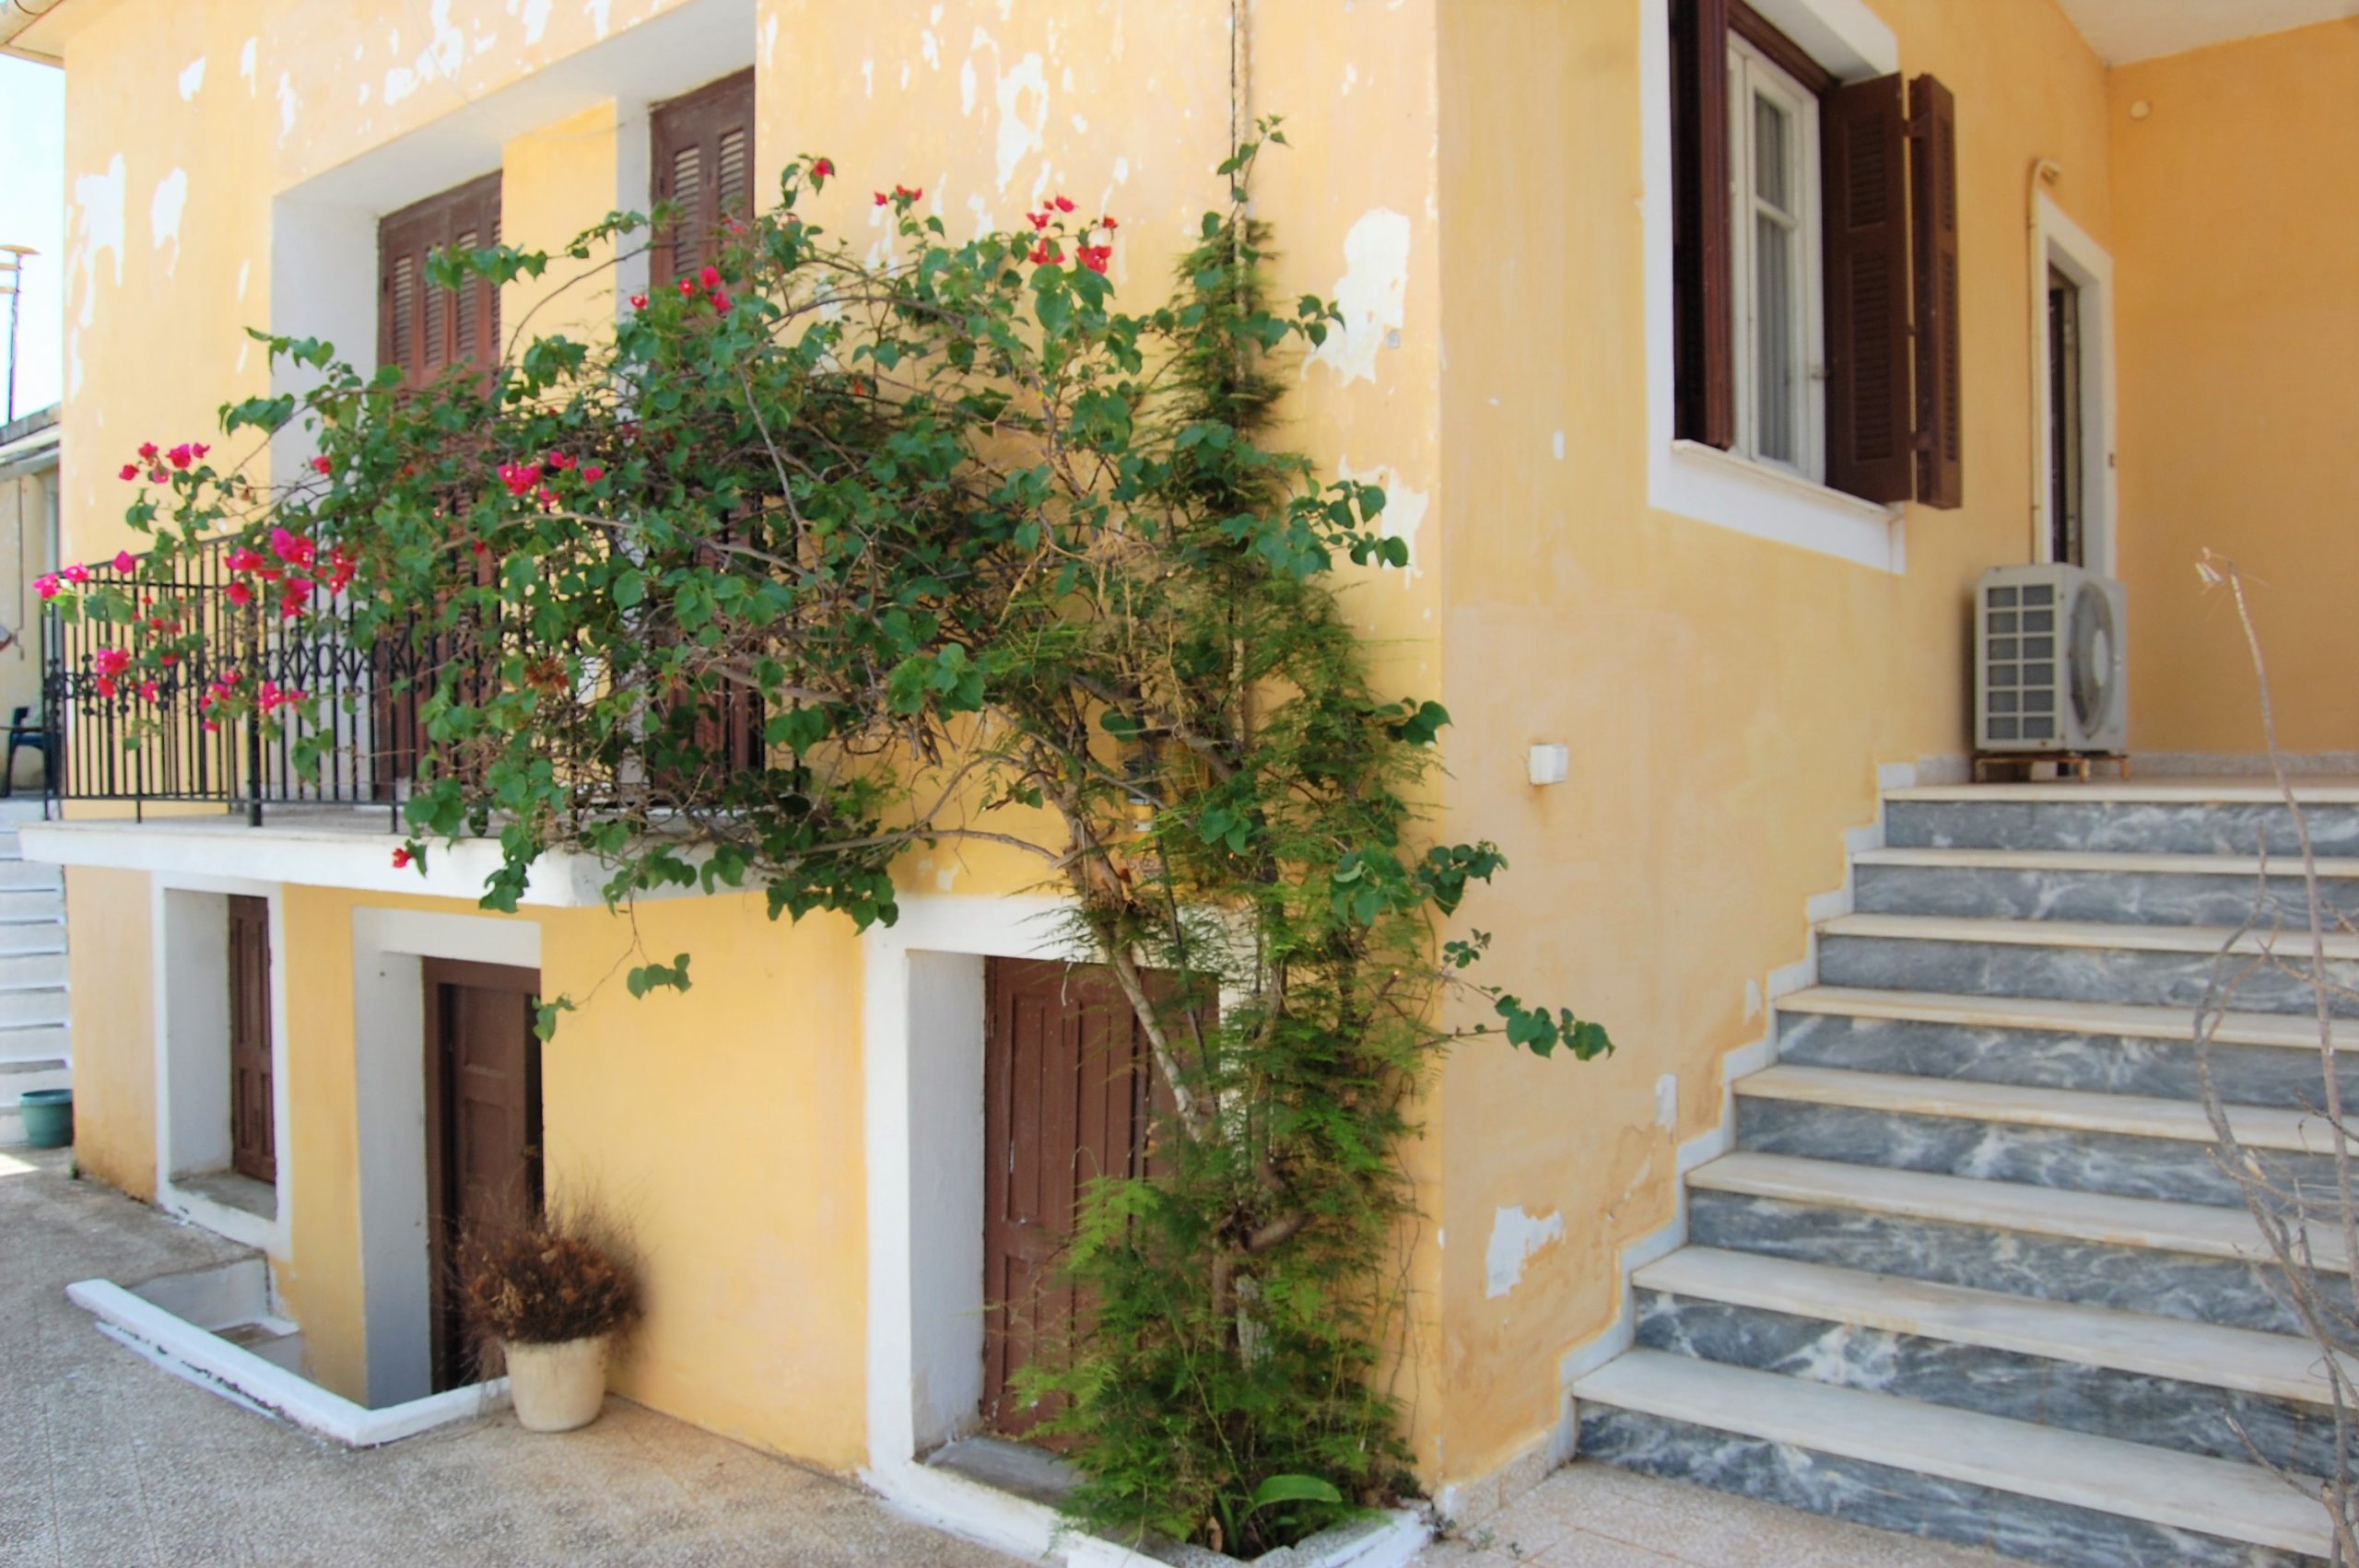 Εξωτερικό σπίτι προς πώληση στην Ιθάκη Ελλάδα, Βαθύ